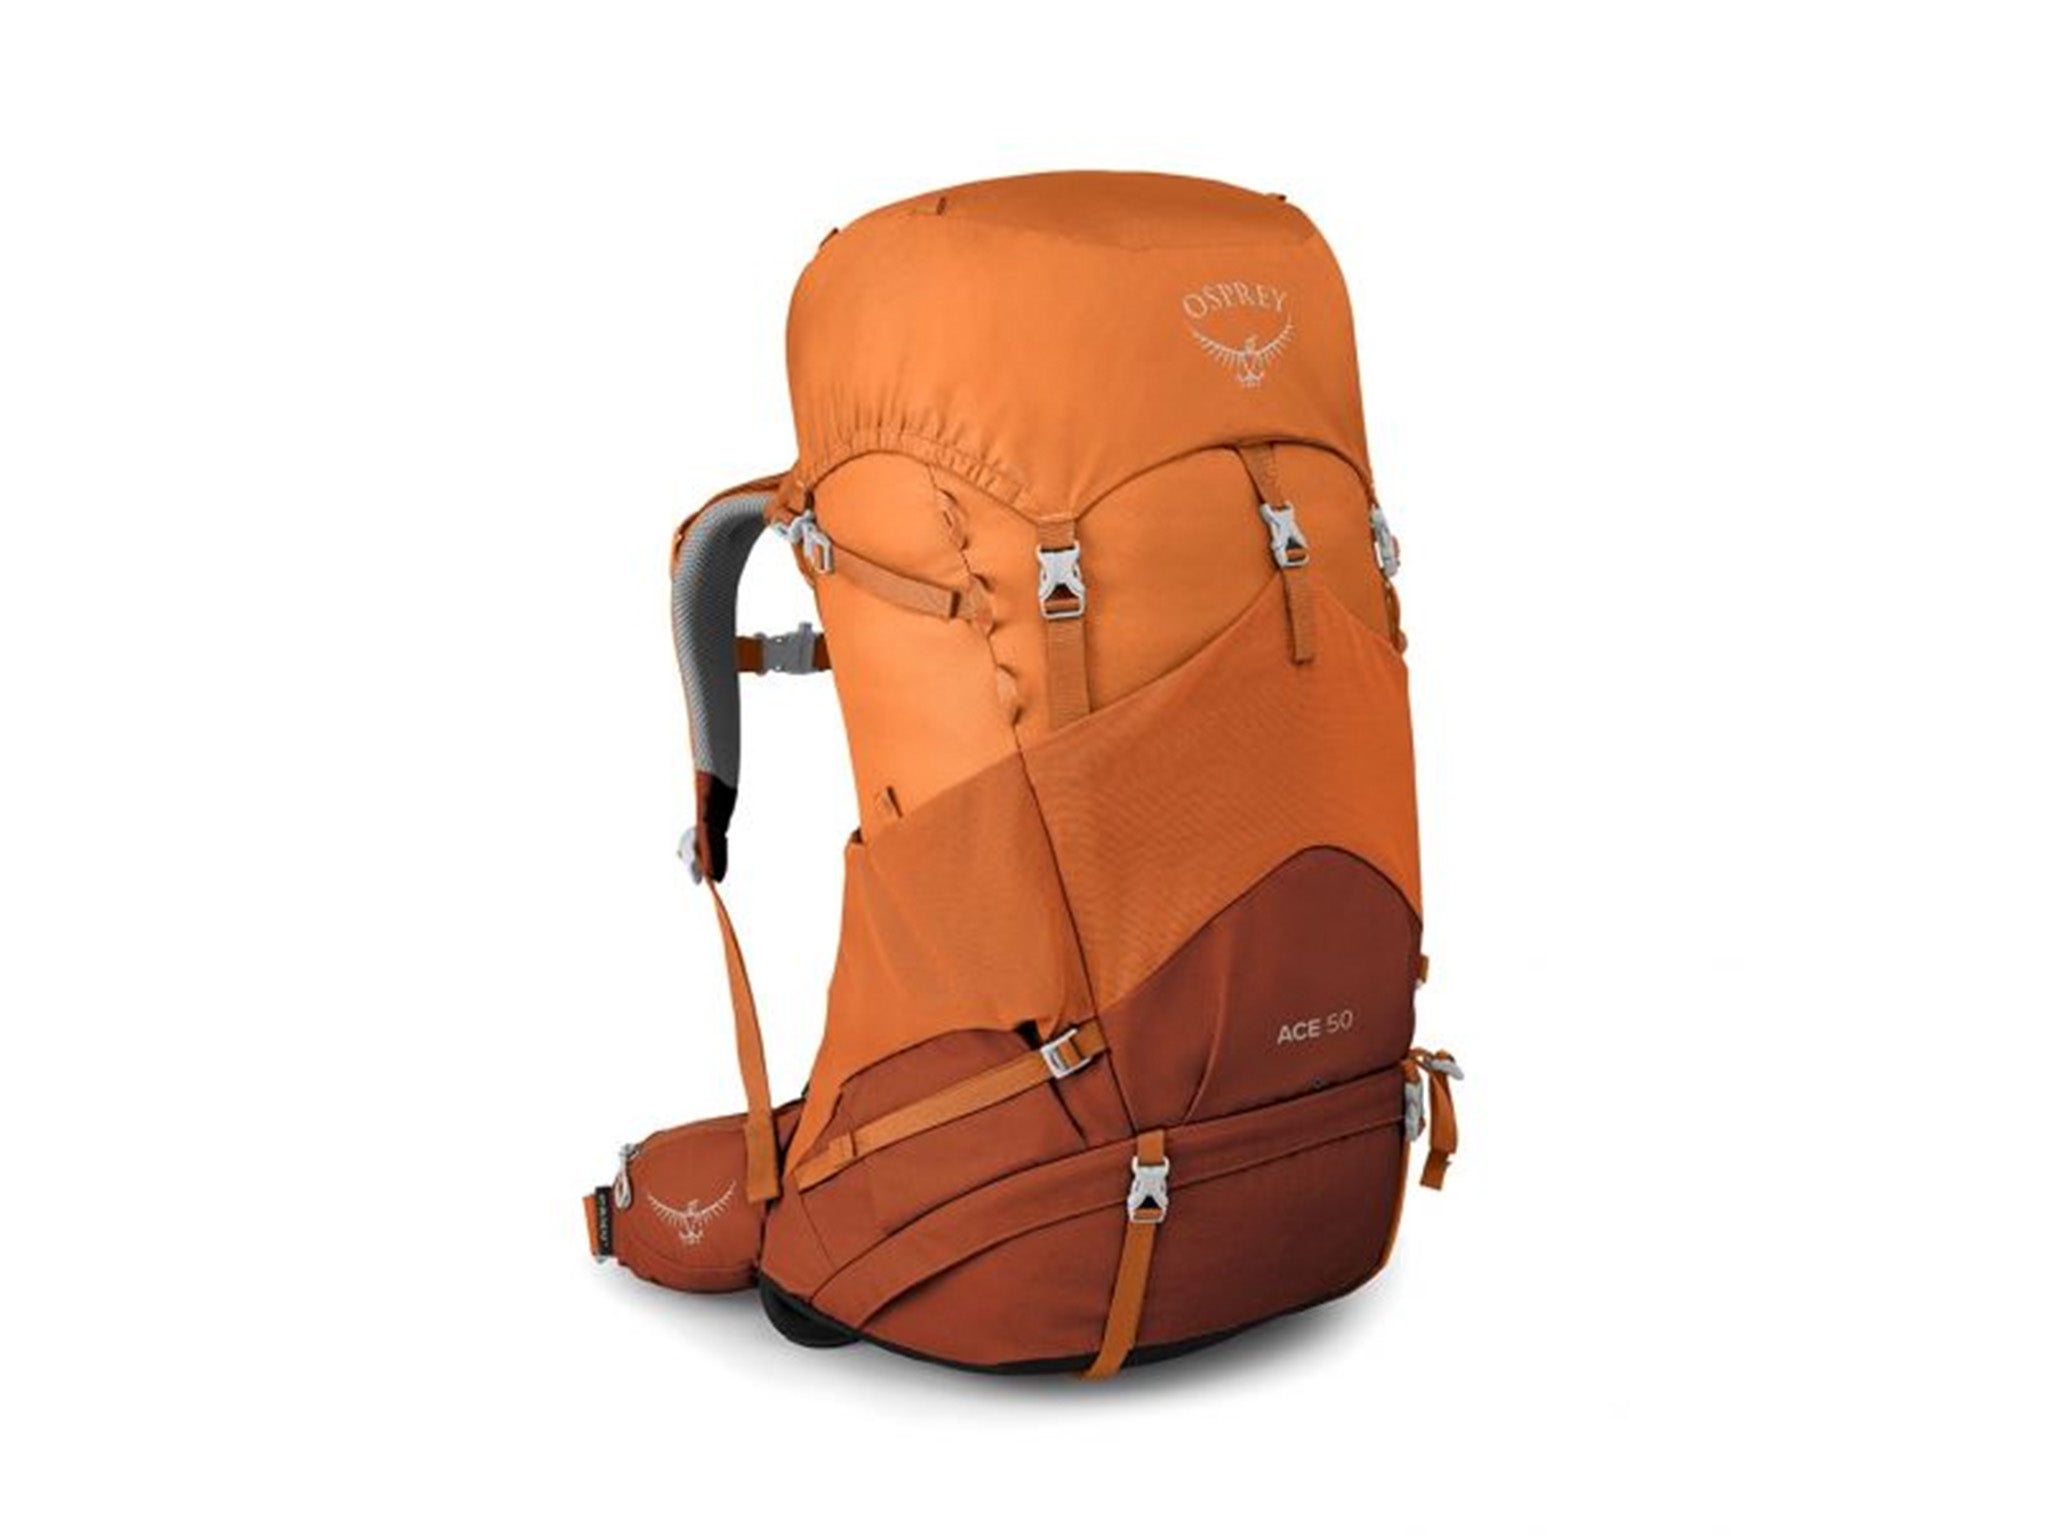 Osprey ace 50 unisex backpack